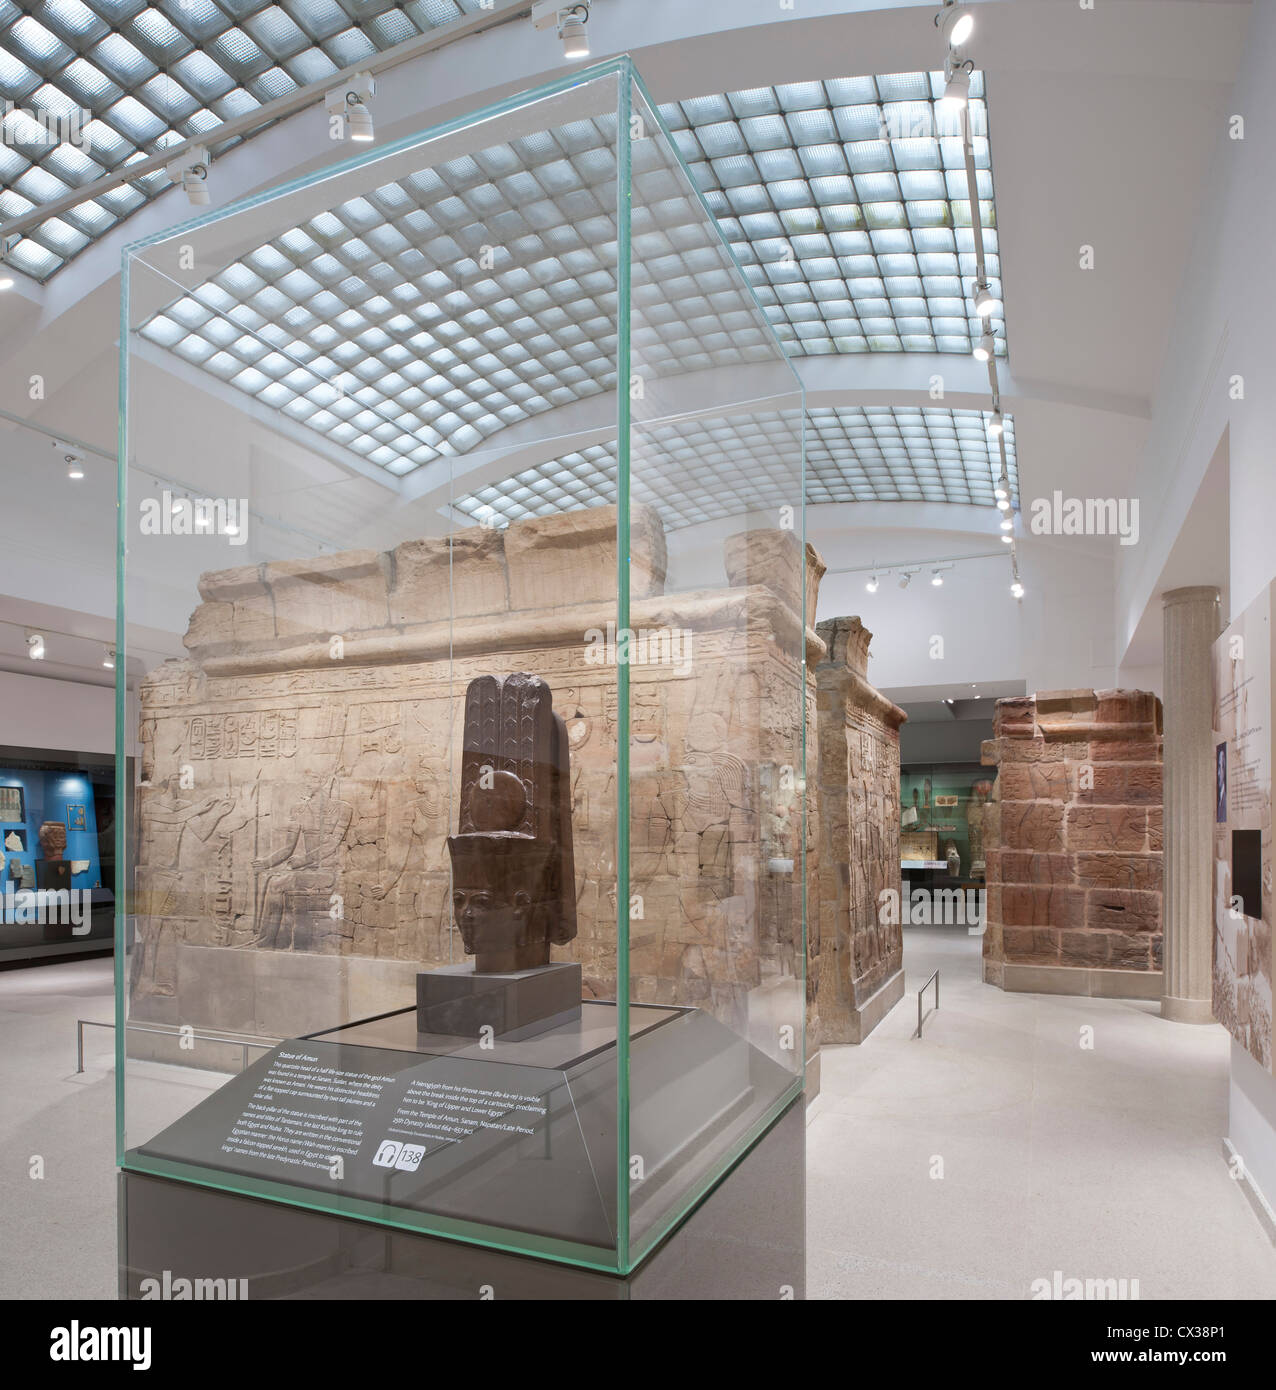 Egitto gallerie, Ashmolean Museum di Oxford, Regno Unito. Architetto: Rick Mather Architects, 2011. Foto Stock